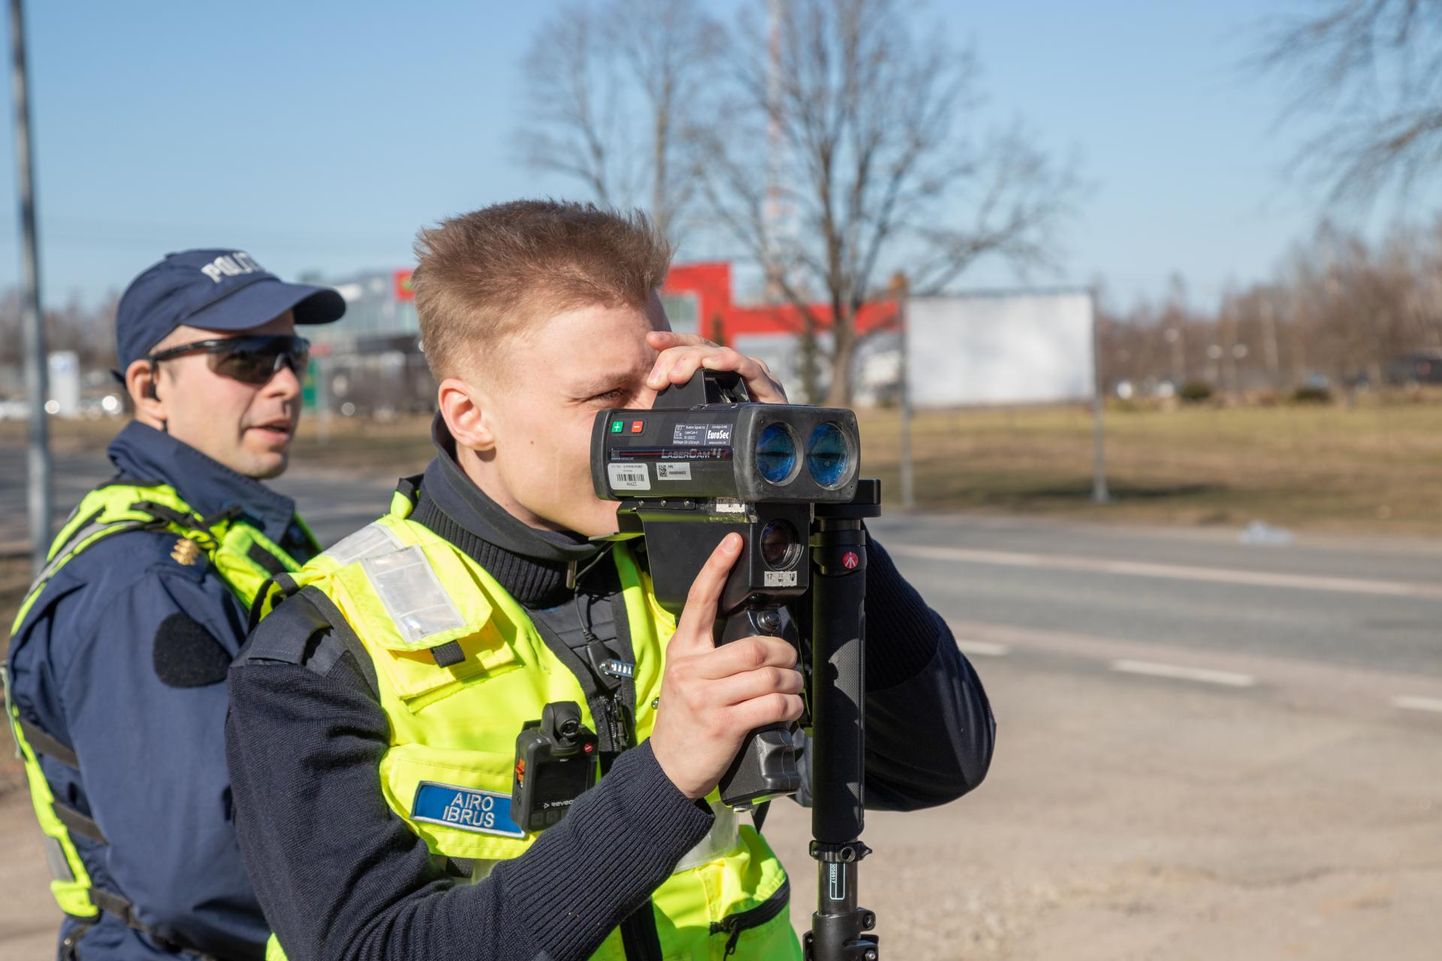 Eile päeval kella nelja paiku mõõtsid politseinikud Airo Ibrus (esiplaanil) ja Alar Sadam kiirust Viljandi piiril Tallinna maantee ääres.